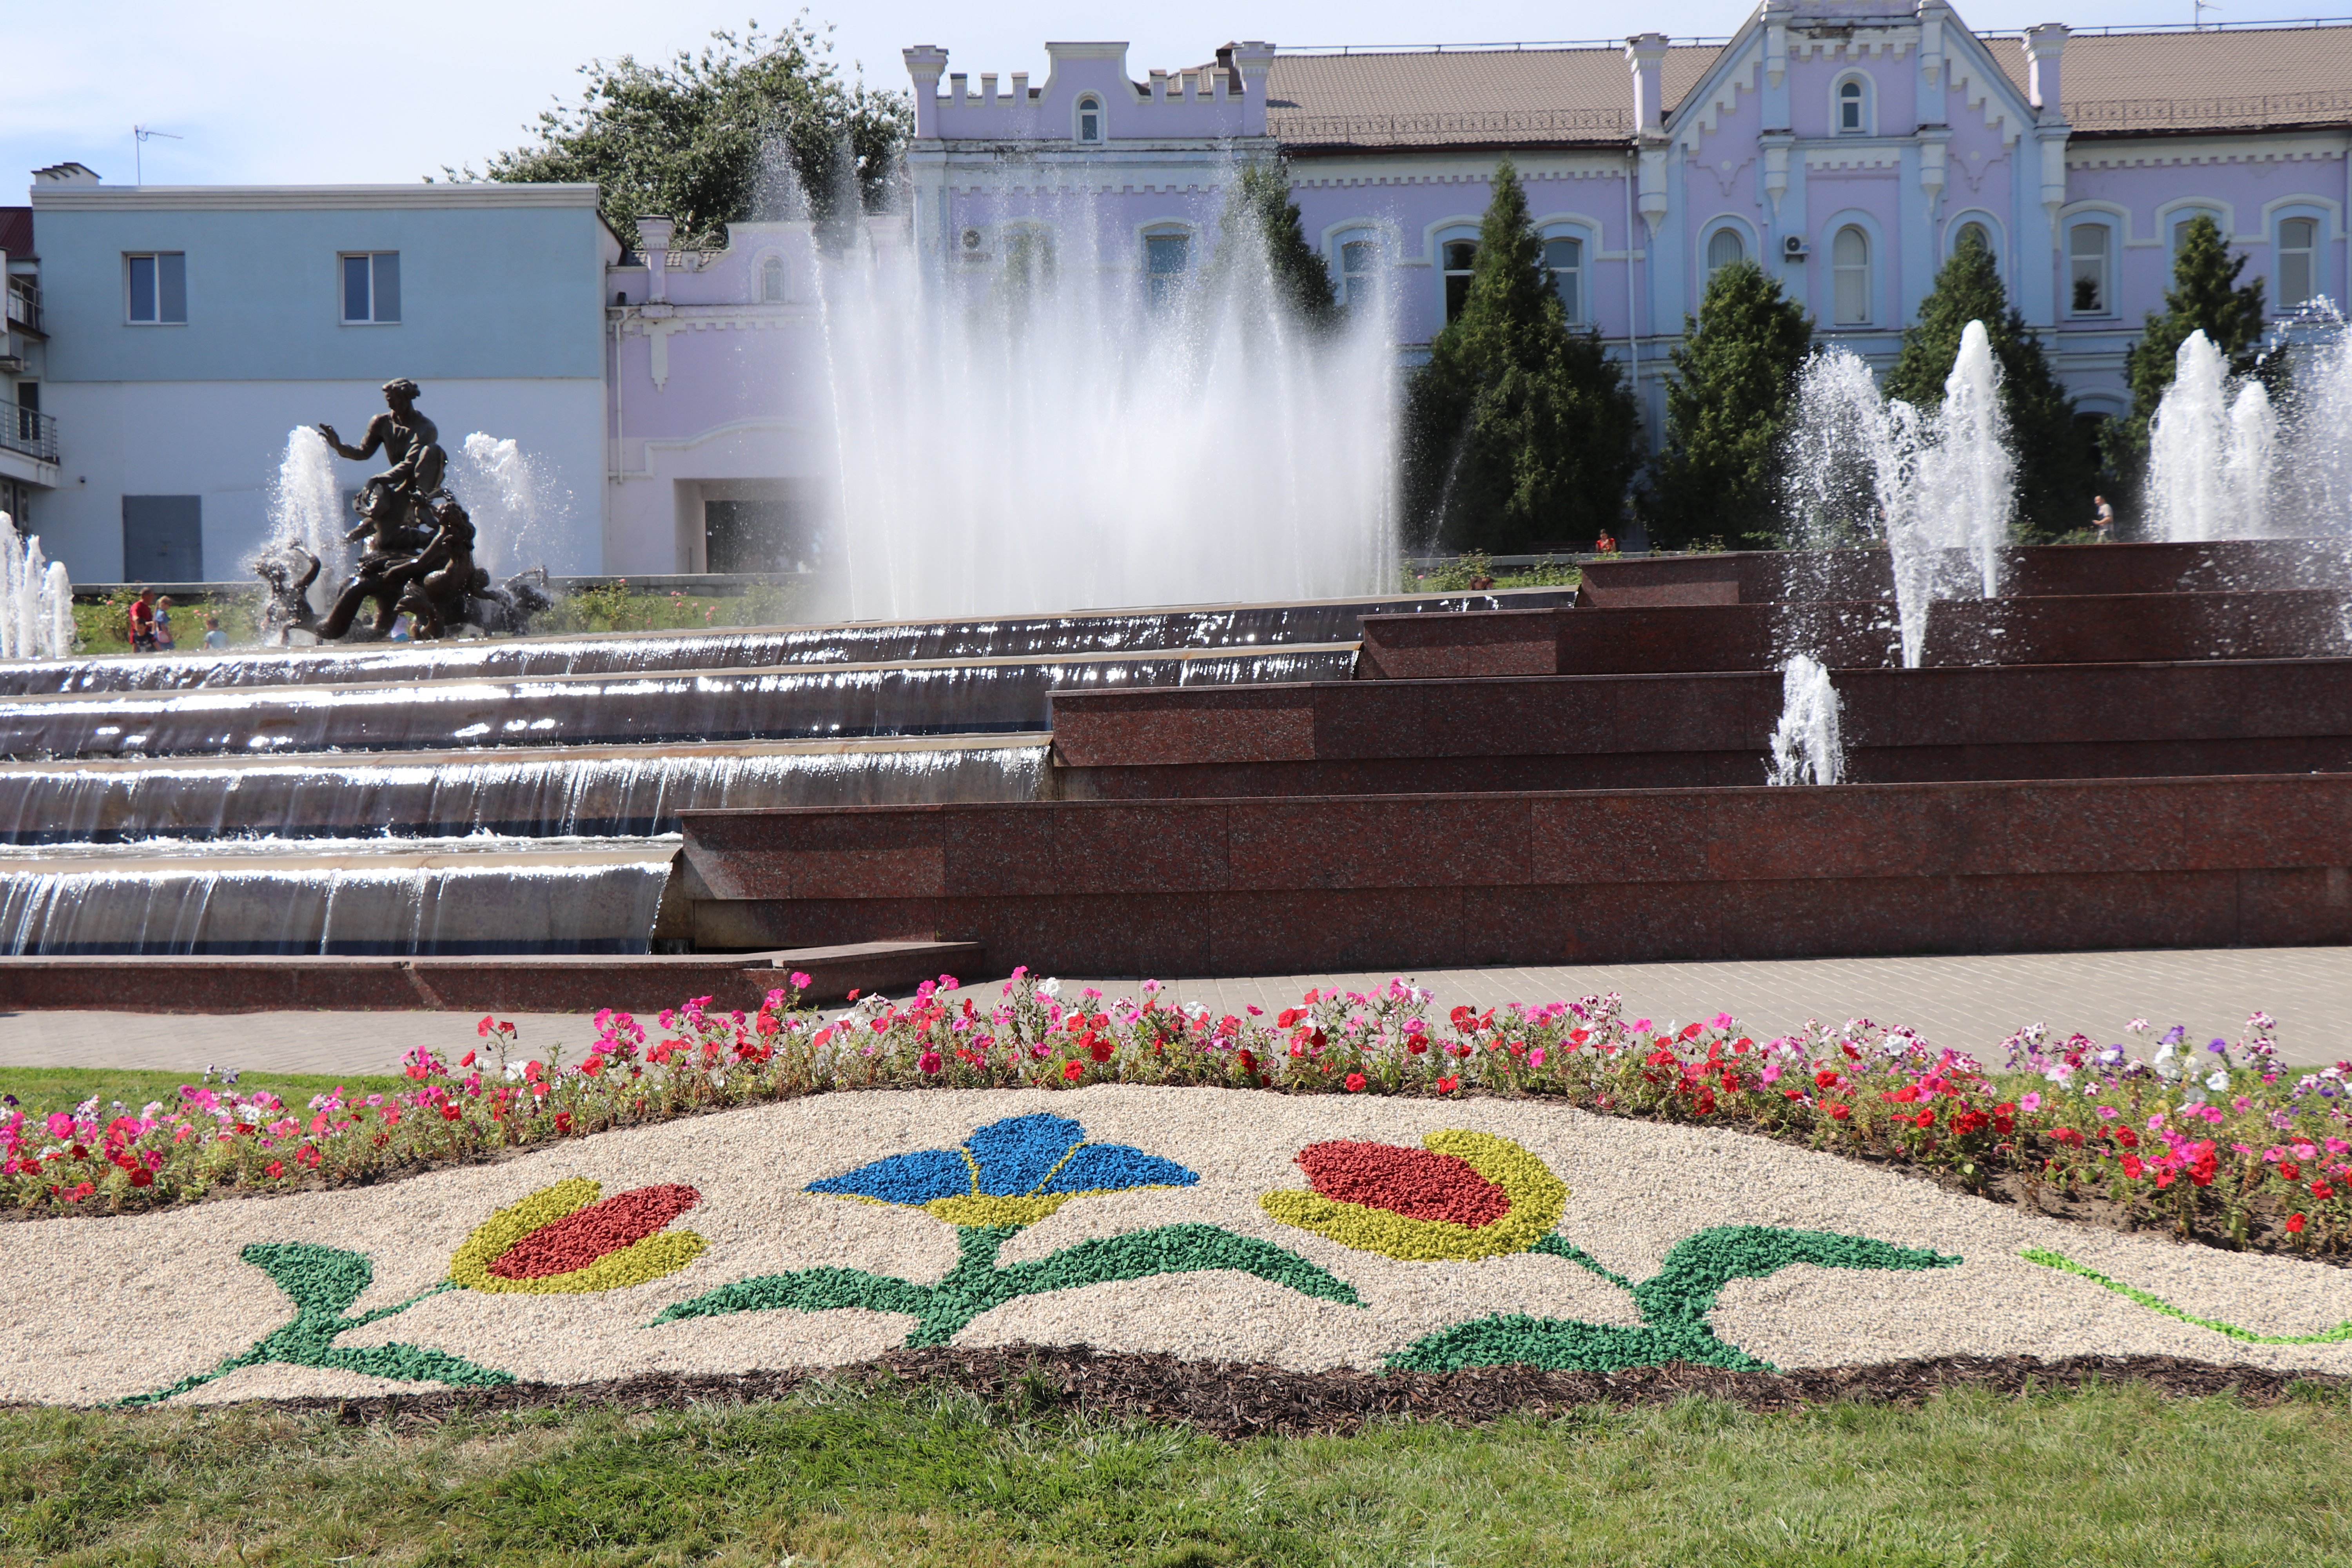 Перша об’ємна клумба в Сумах розцвіла поруч із фонтаном «Садко». Фото із сайту Сумської міської ради